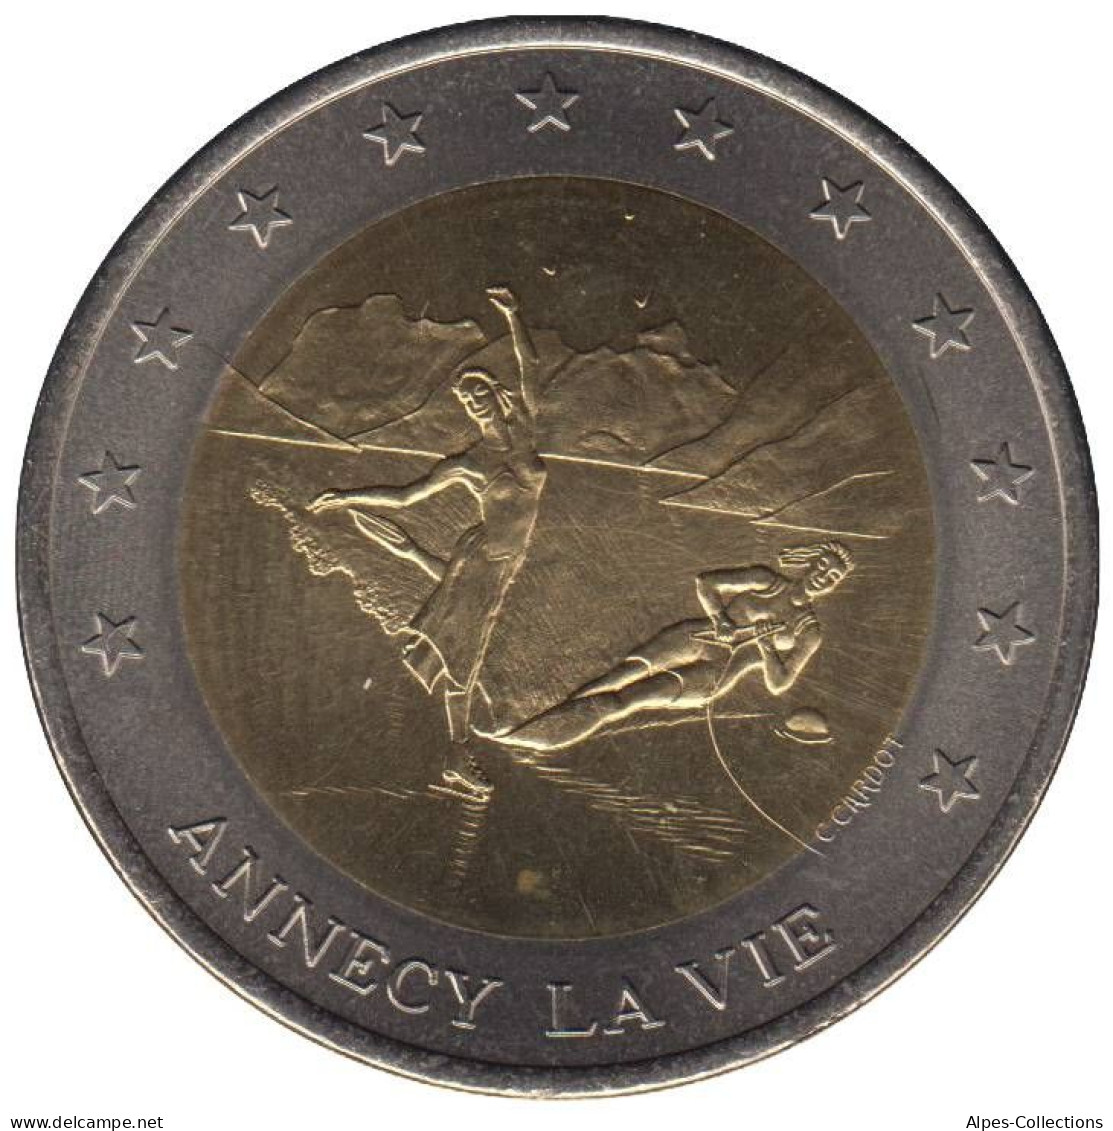 ANNECY - EU0100.1 - 10 EURO DES VILLES - Réf: T235 - 1997 - Euros Des Villes